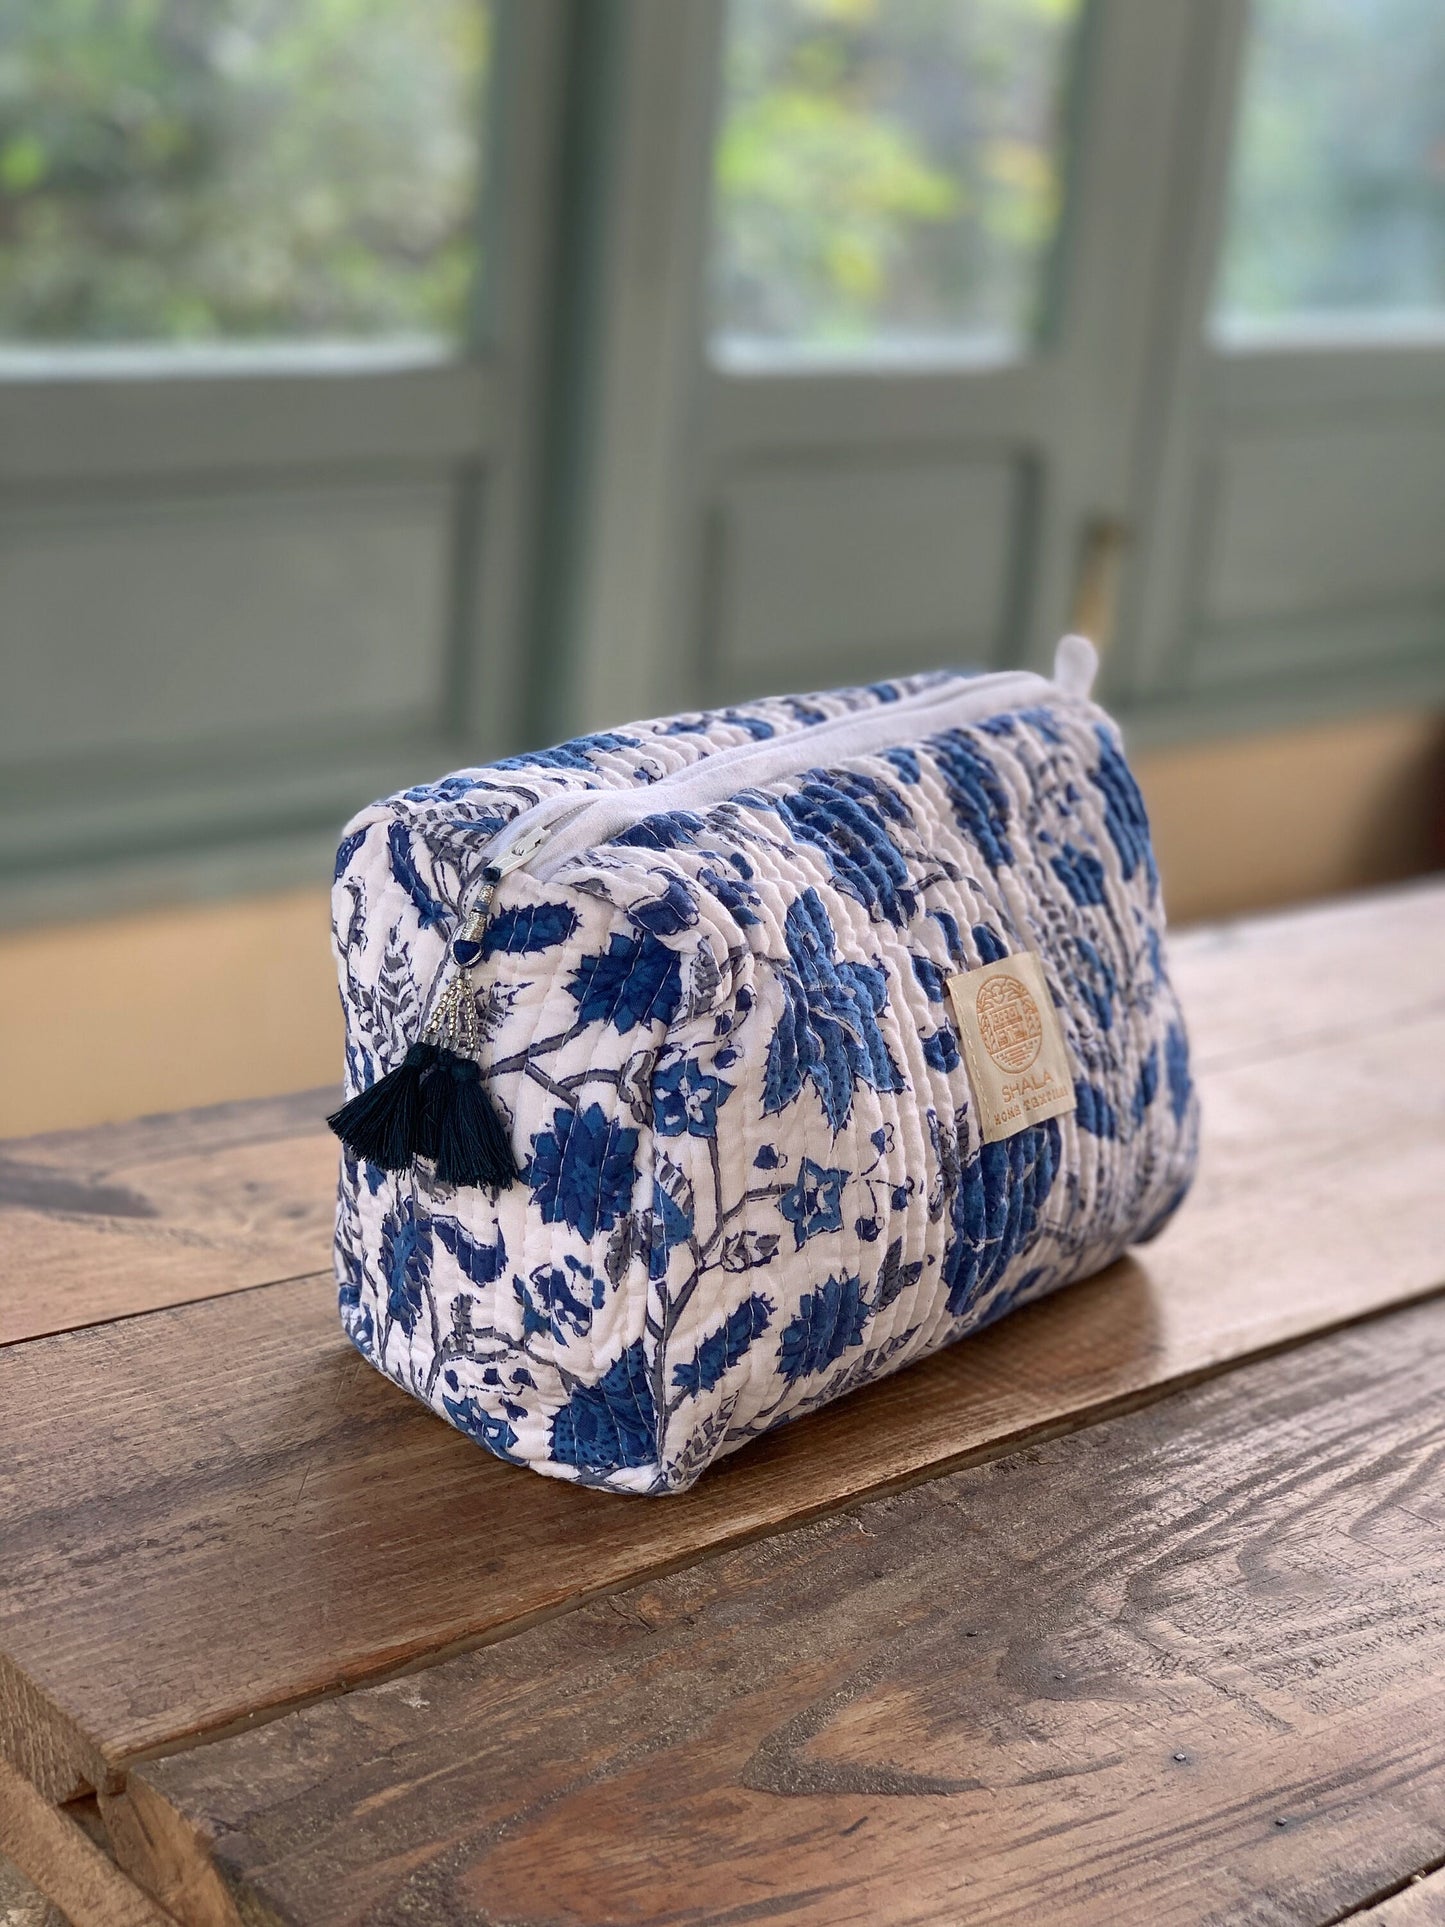 SET regalo · Bata kimono, bolsa de aseo & zapatillas a juego · Algodón puro estampado block print artesanal en India · Azul mix